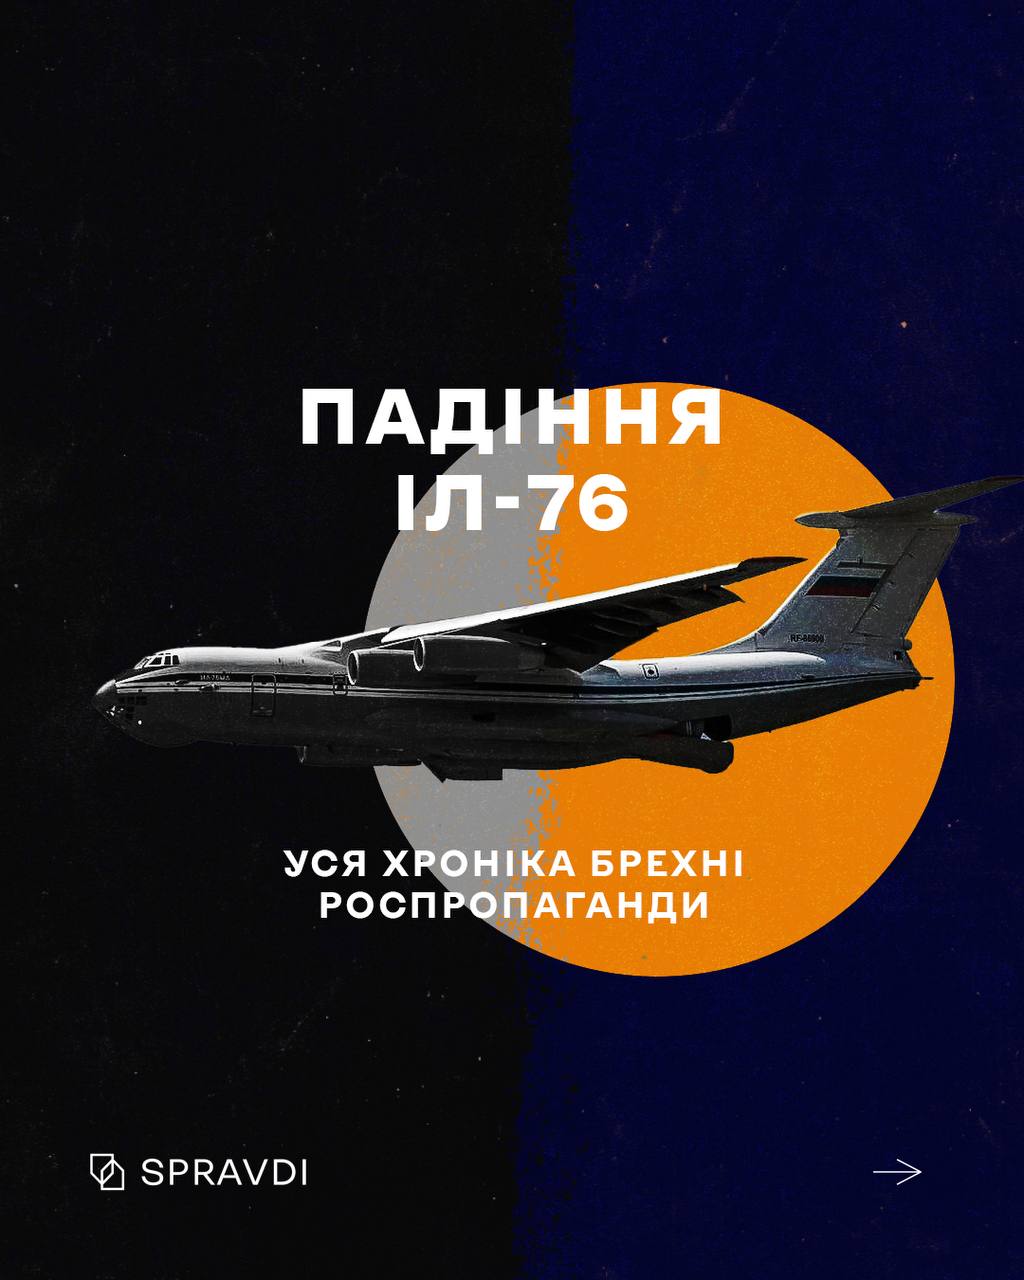 Як росія бреше про падіння Іл-76 у бєлгородській області